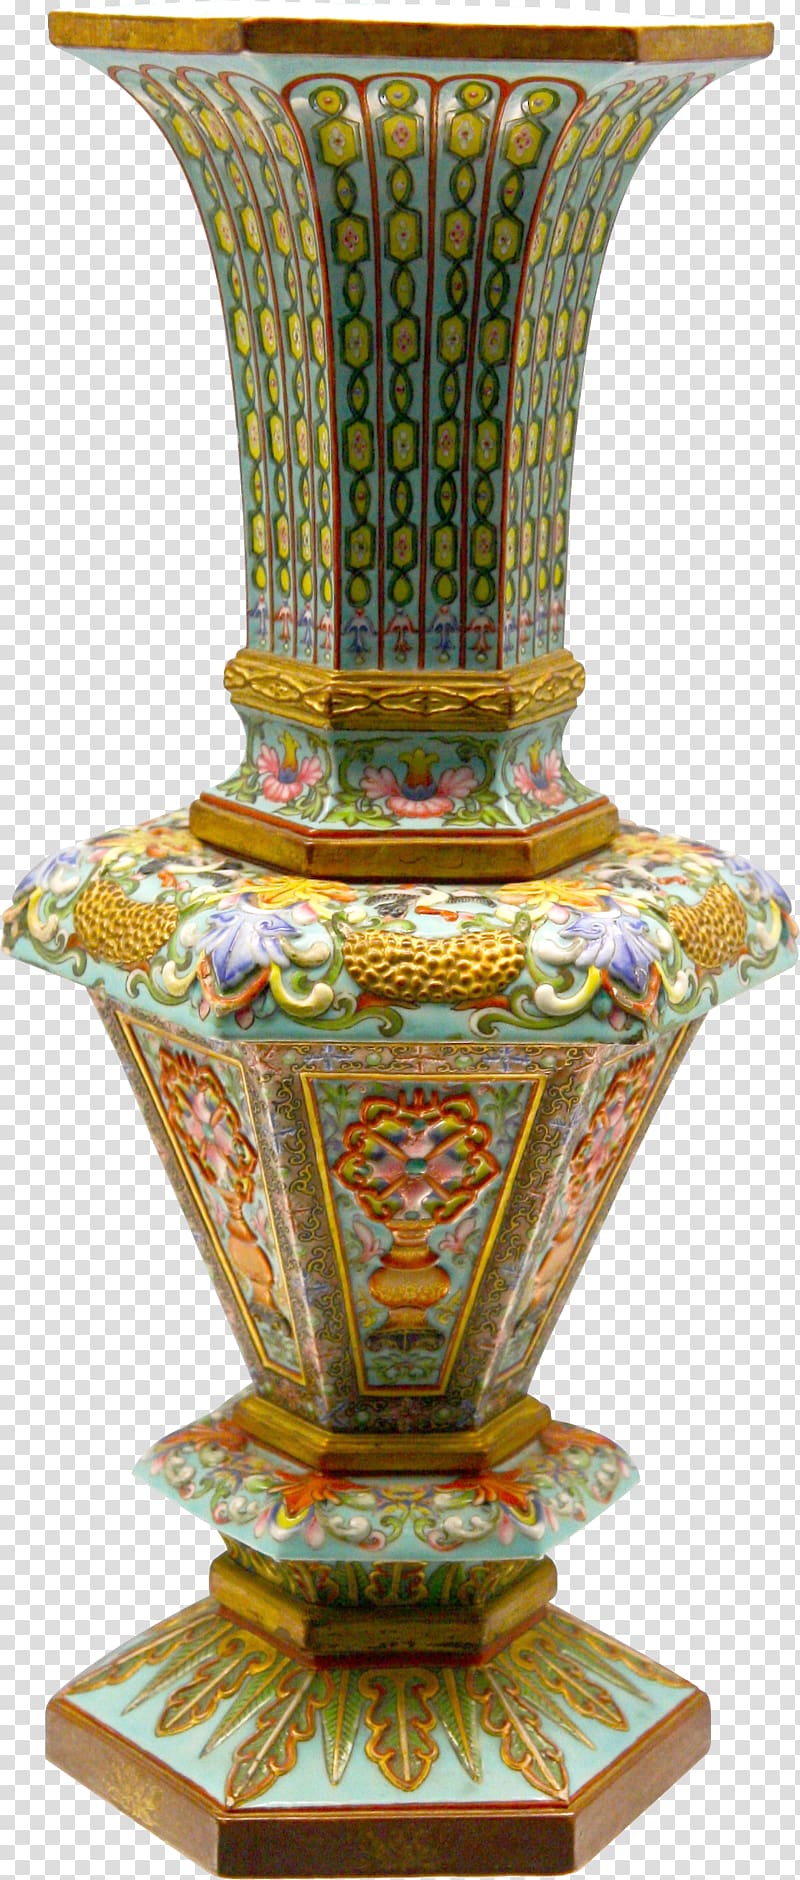 multicolored ceramic vase illustration, Vase Still life, vase transparent background PNG clipart